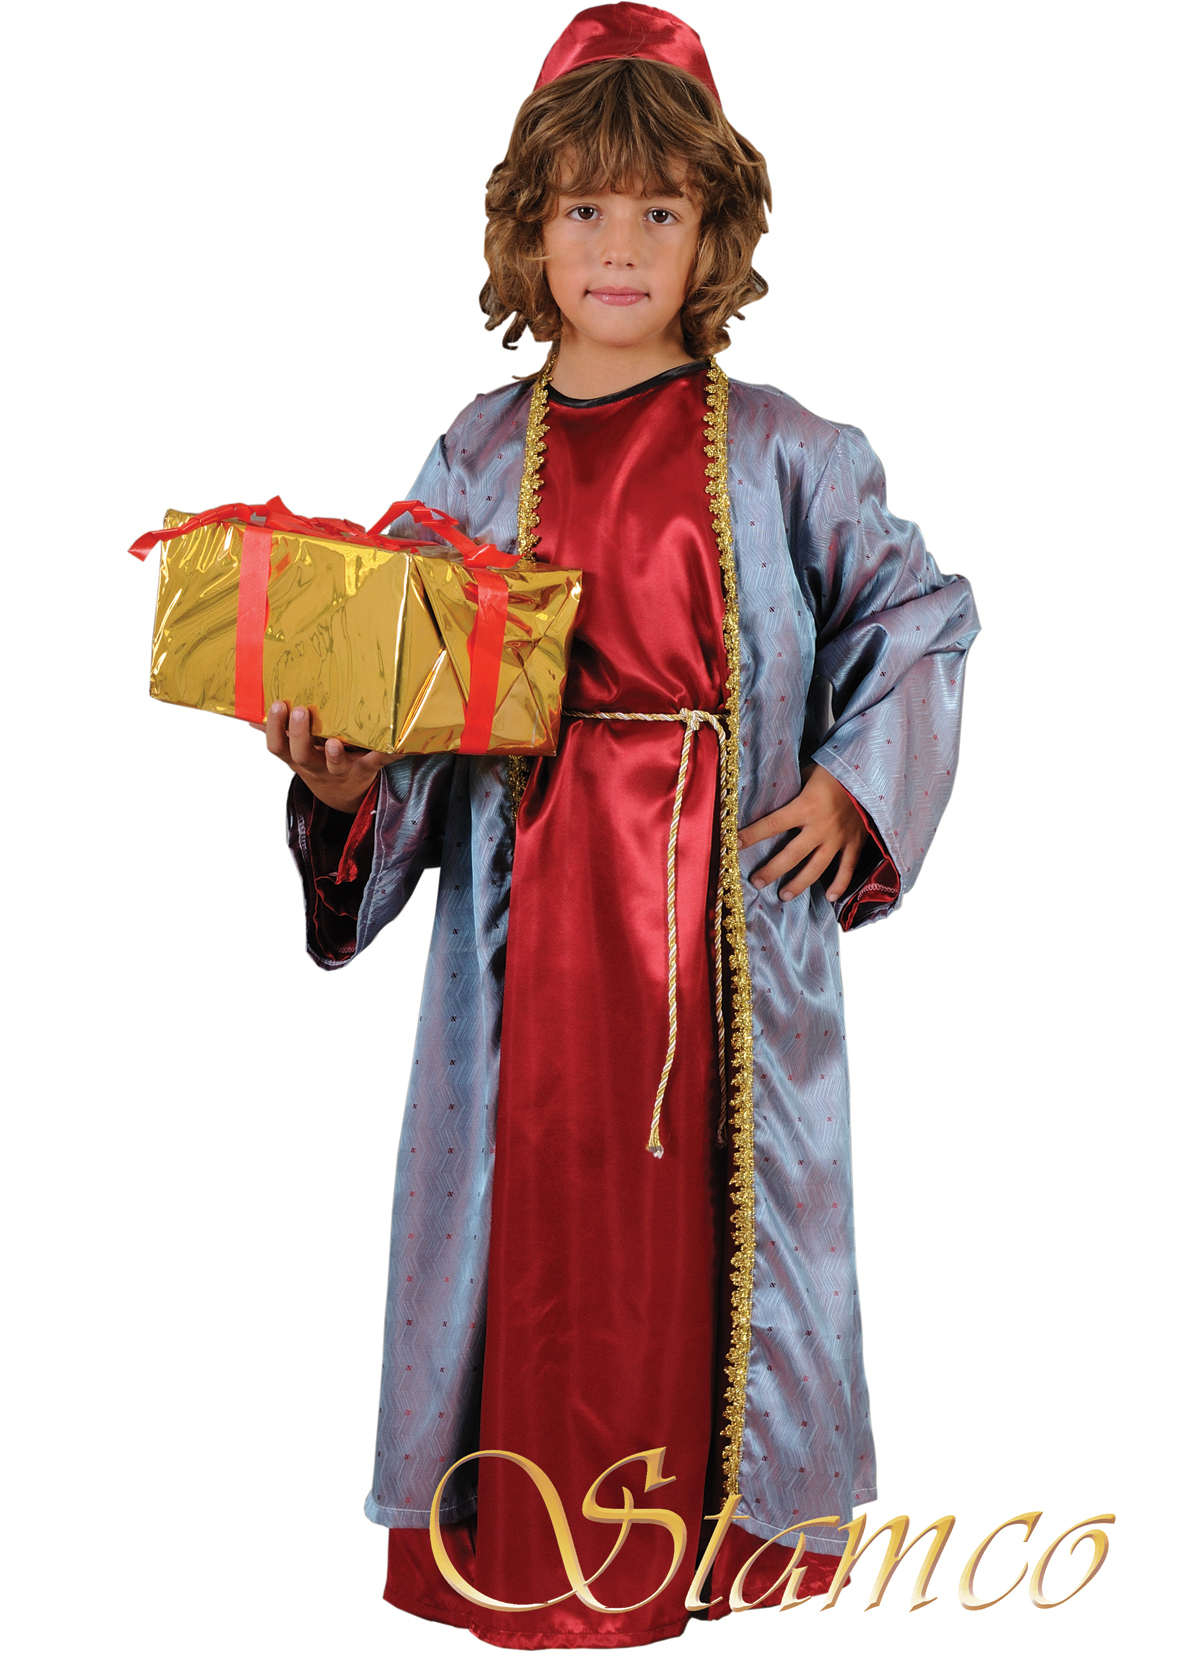 Throat block Desert Christmas Costume Little Balthasar, Wise Men Costume